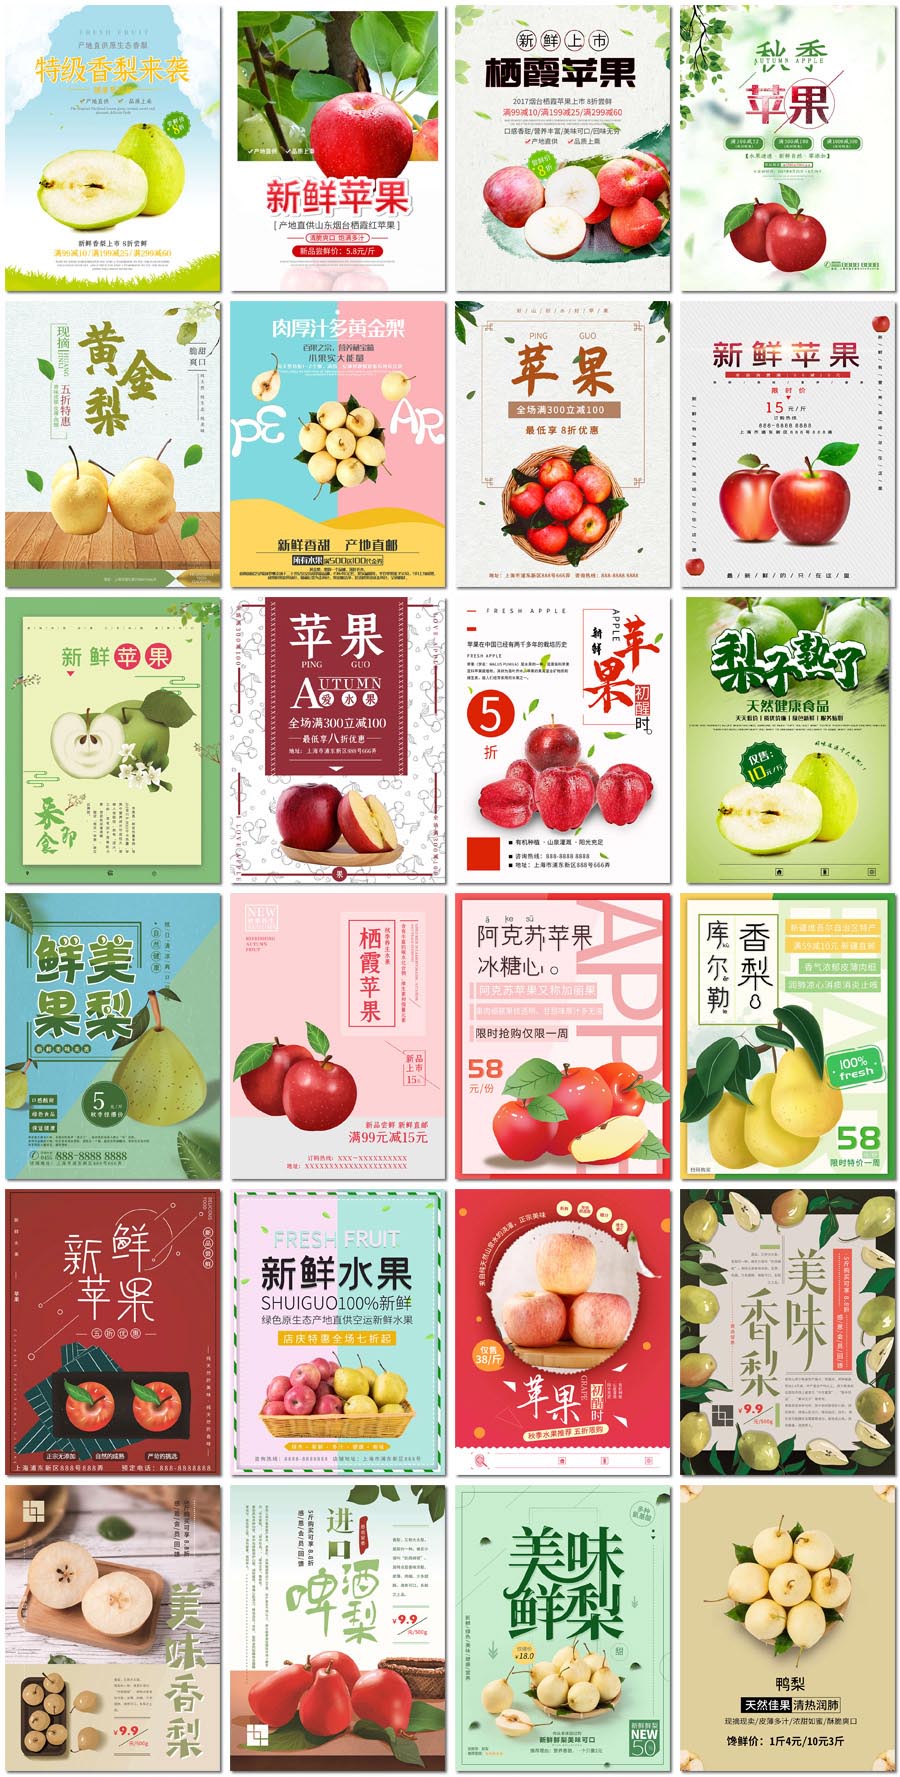 新鲜水果香梨子青苹果水果店超市活动促销海报设计psd模板素材